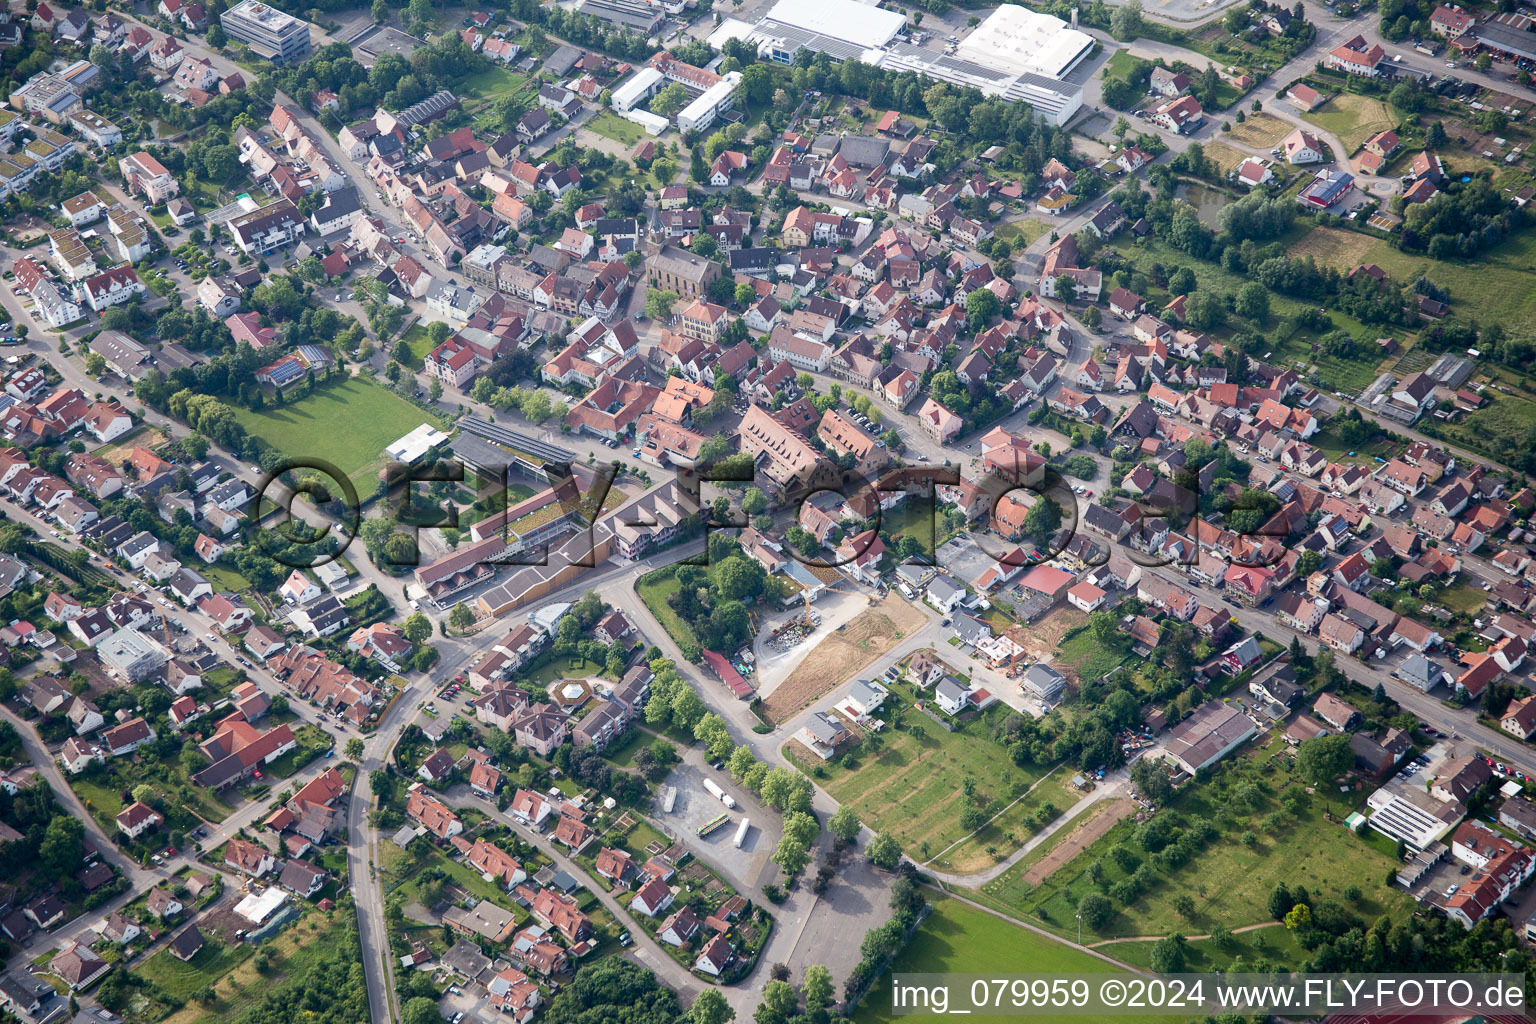 Vue aérienne de Vue des rues et des maisons des quartiers résidentiels à Güglingen dans le département Bade-Wurtemberg, Allemagne